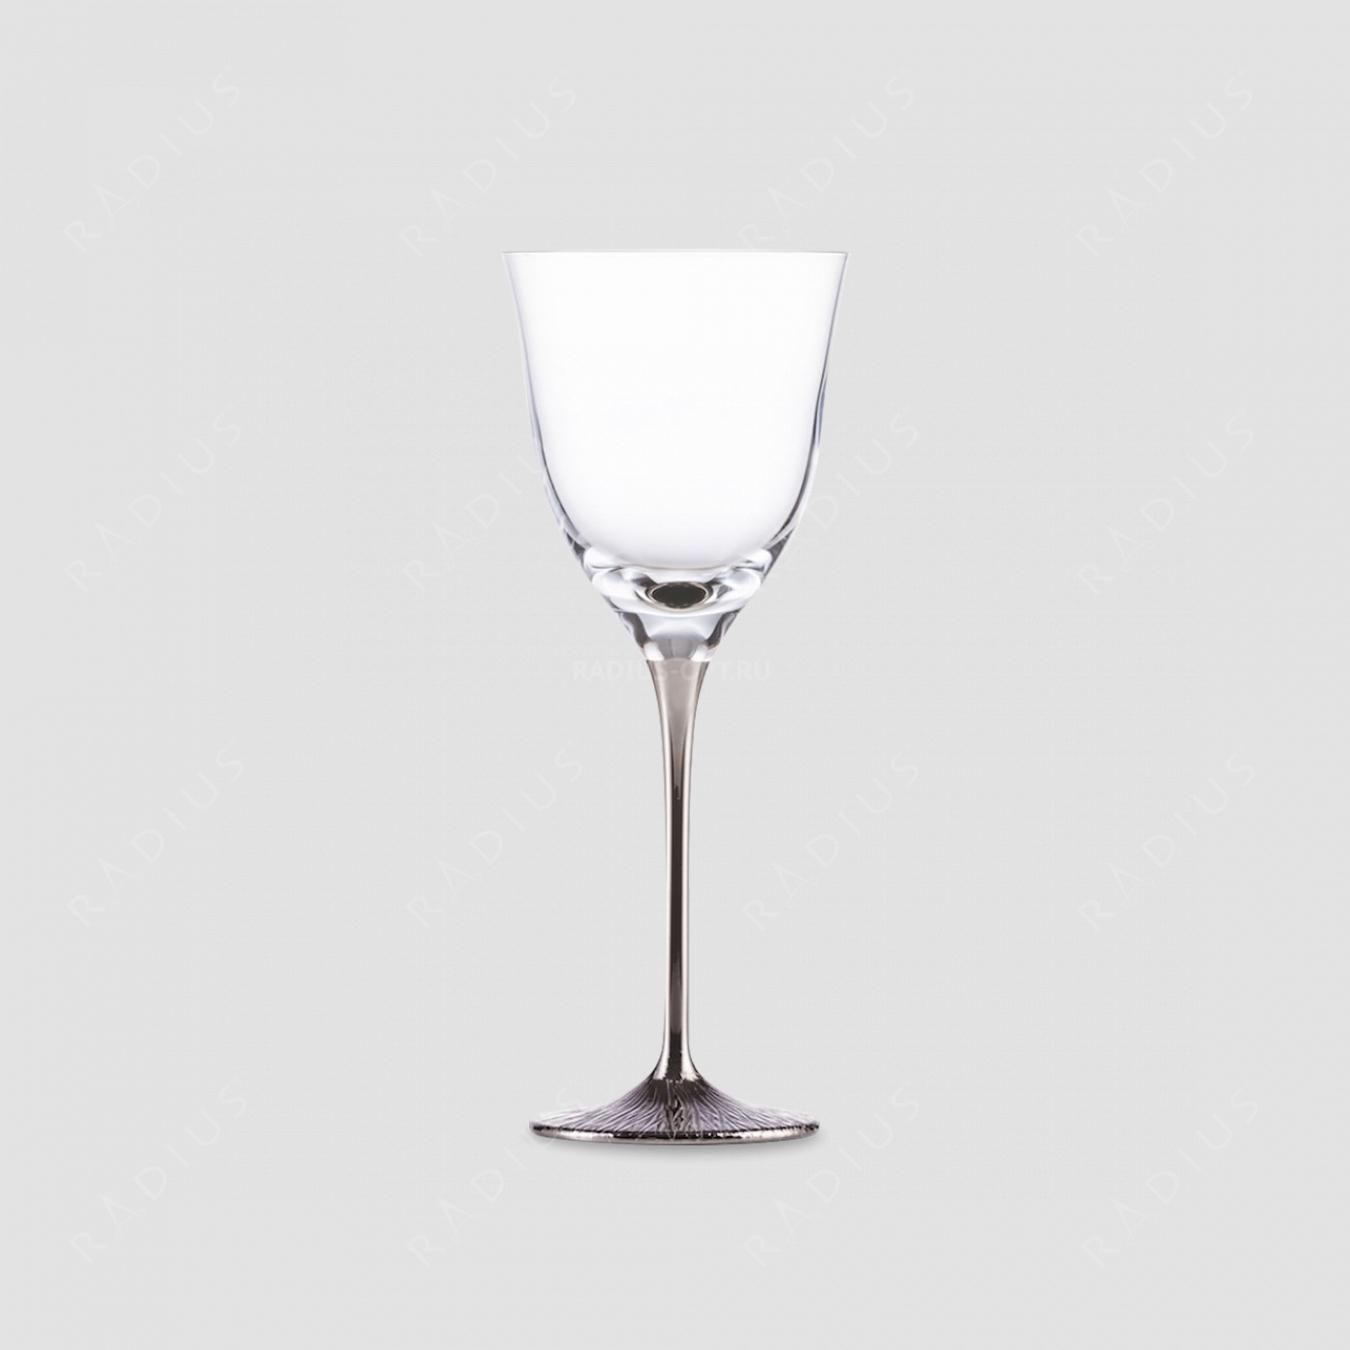 Бокал для белого вина Platin, объем: 220 мл, материал: бессвинцовый хрусталь, серия Ravi, EISCH, Германия